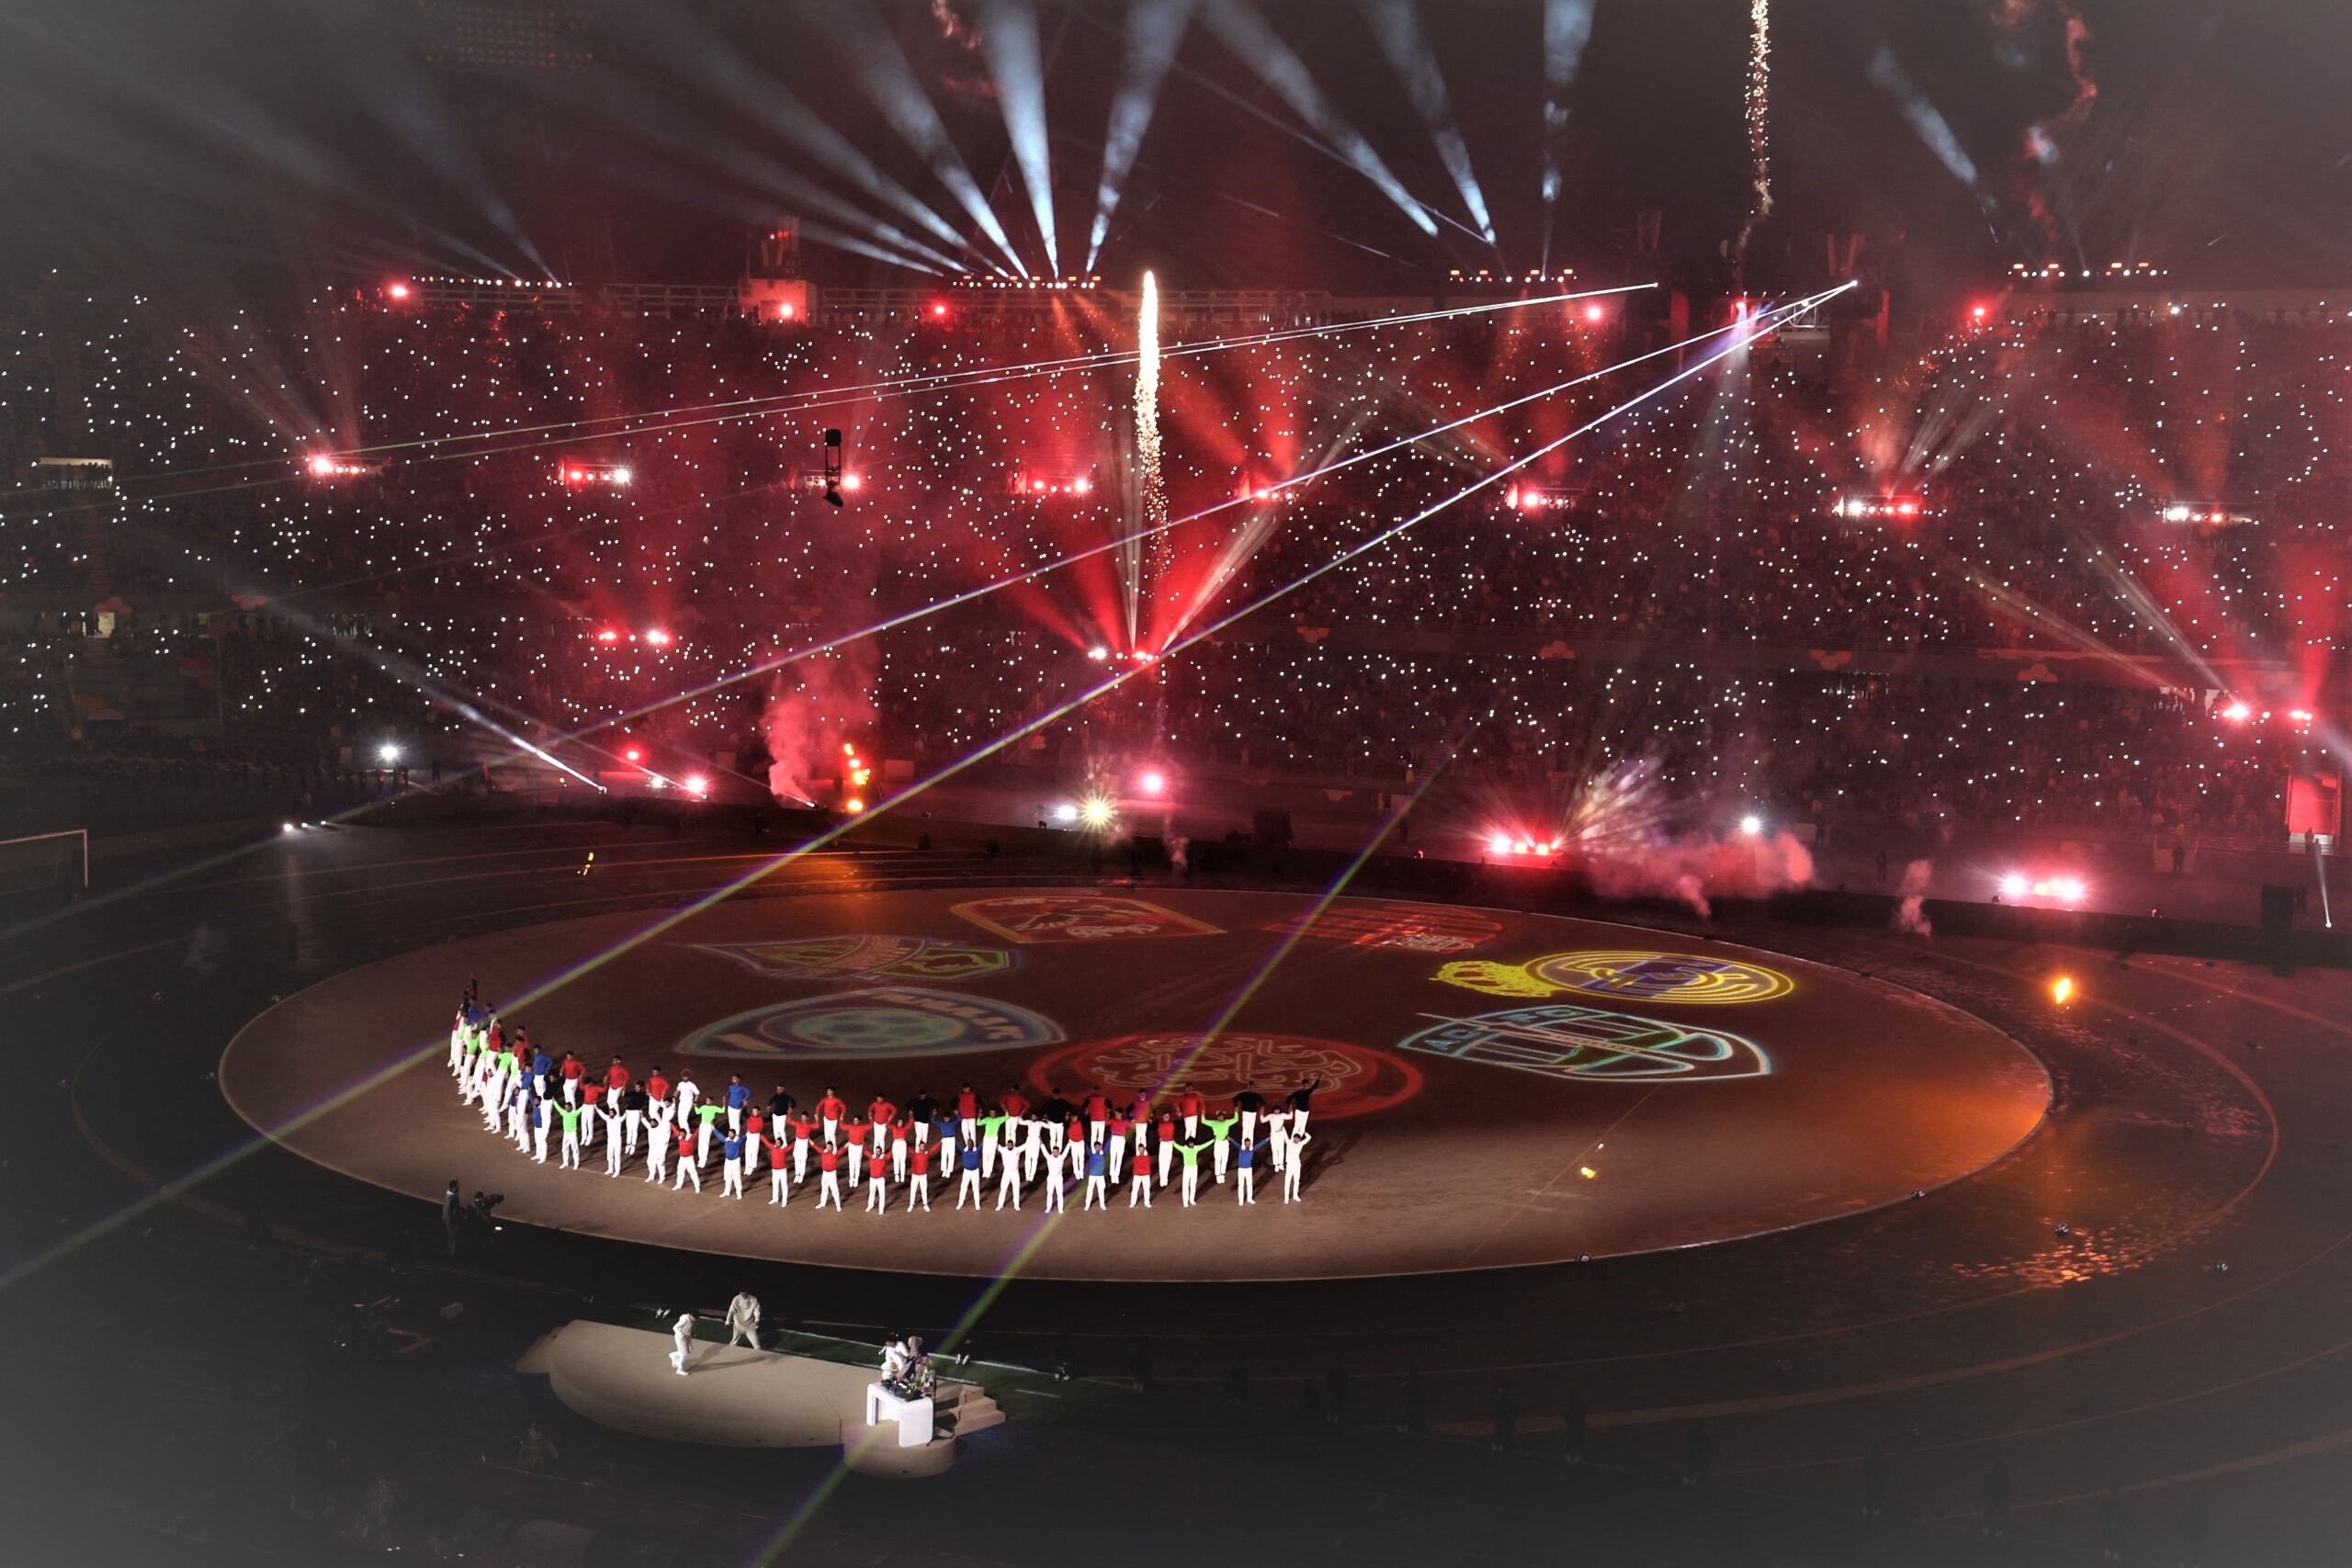 الشركة الوطنية للإذاعة والتلفزة تنجح في رهان وضع المشاهدين عبر العالم في قلب فعاليات الدورة الـ19 لكأس العالم للأندية